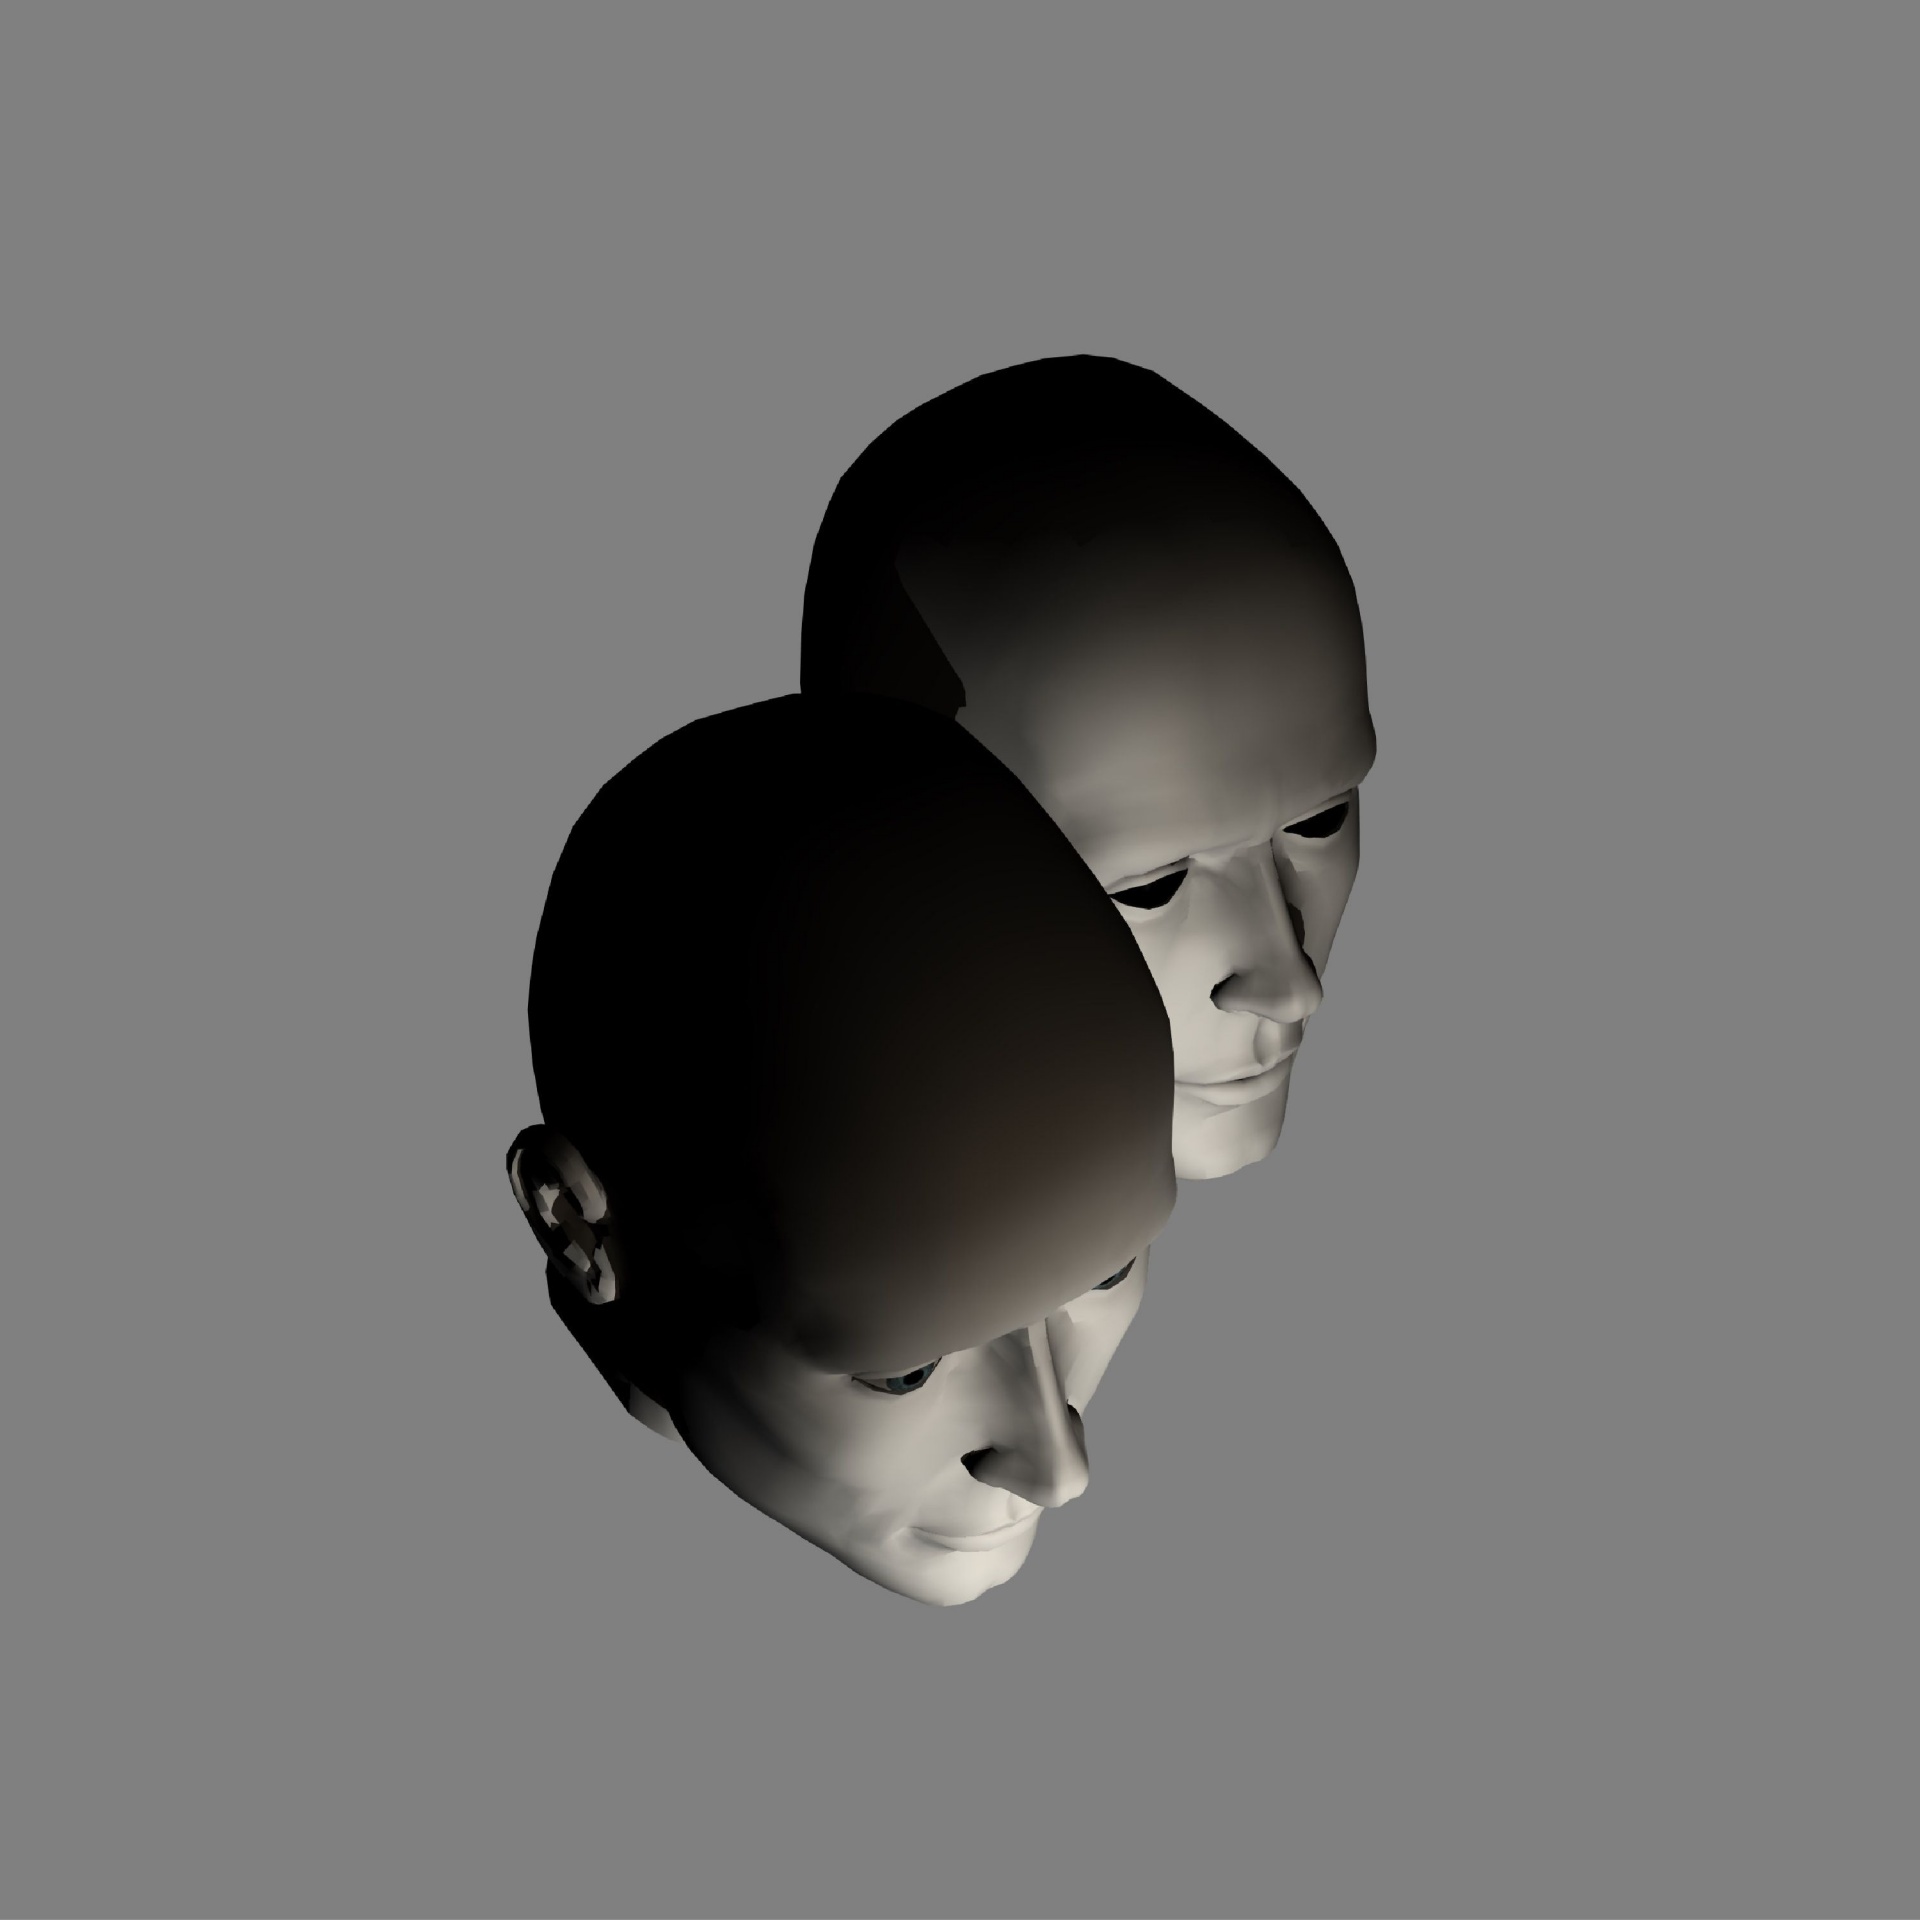 Второй затылок. Две головы человека фон. Человек с двумя головами рисунок. Head2head.